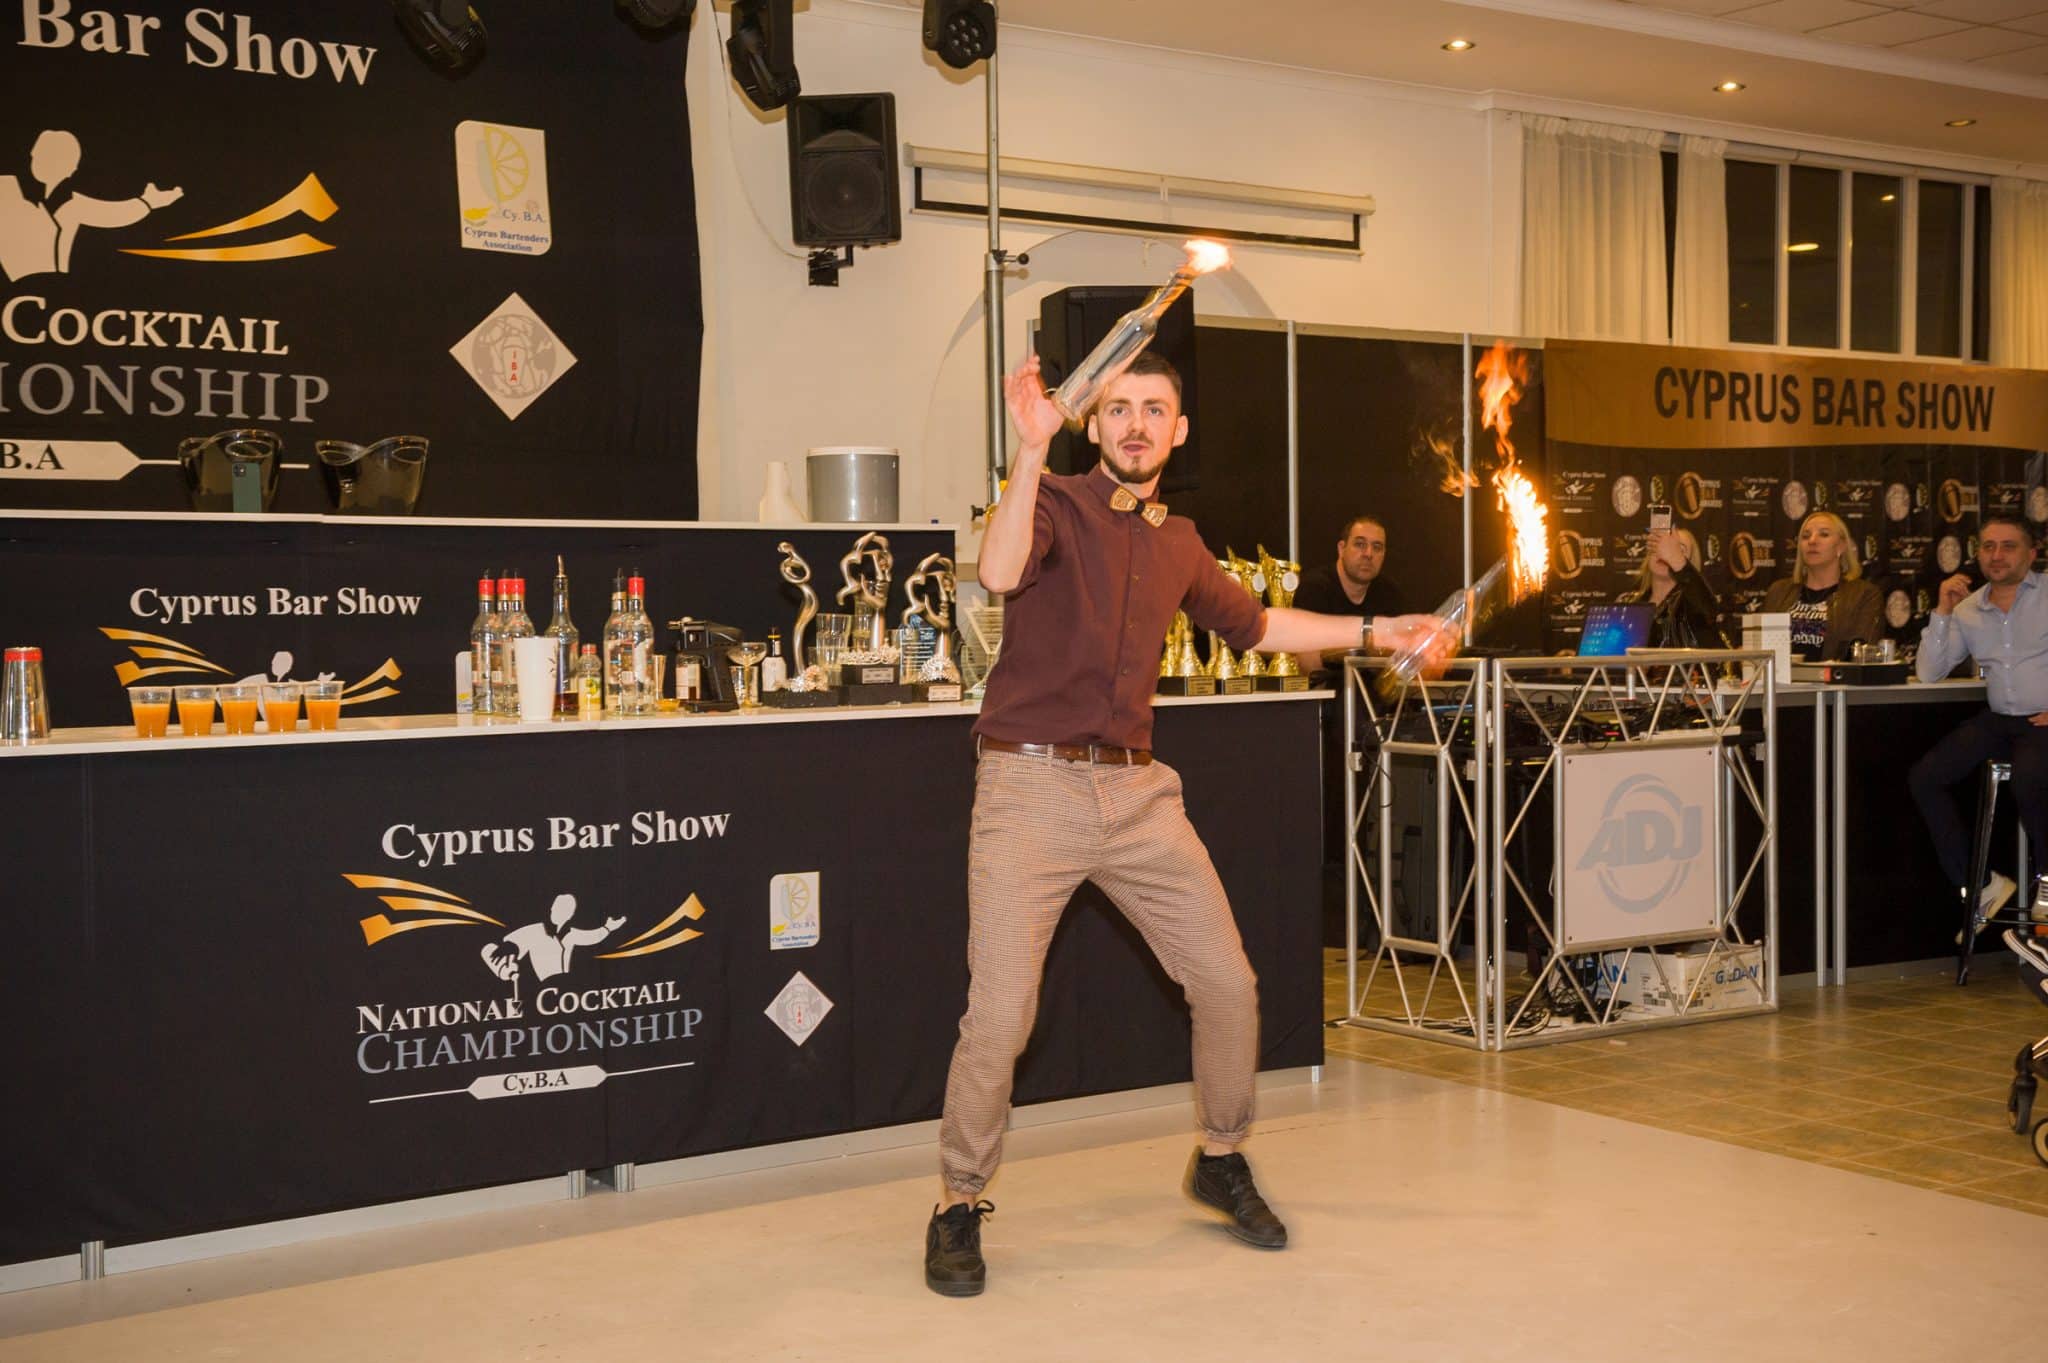 NEL7894 принял участие в 8-й Кипрской барной выставке, эксклюзив, конкурсы коктейлей, ПАРАЛИМНИ